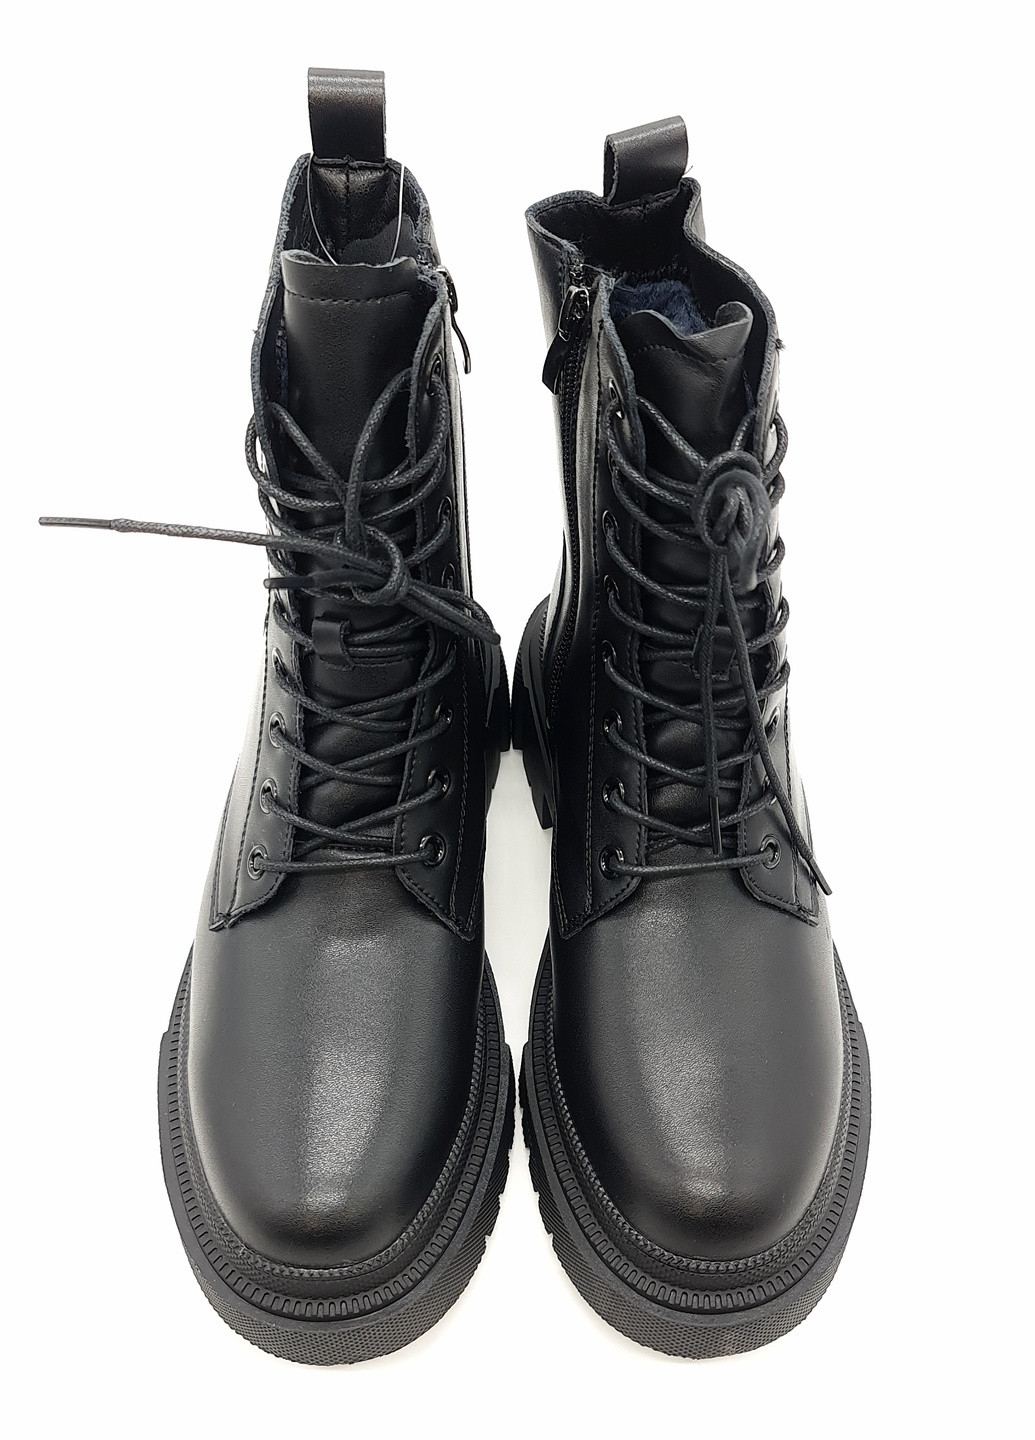 Осенние женские ботинки зимние черные кожаные he-11-3 23,5 см (р) Hengji